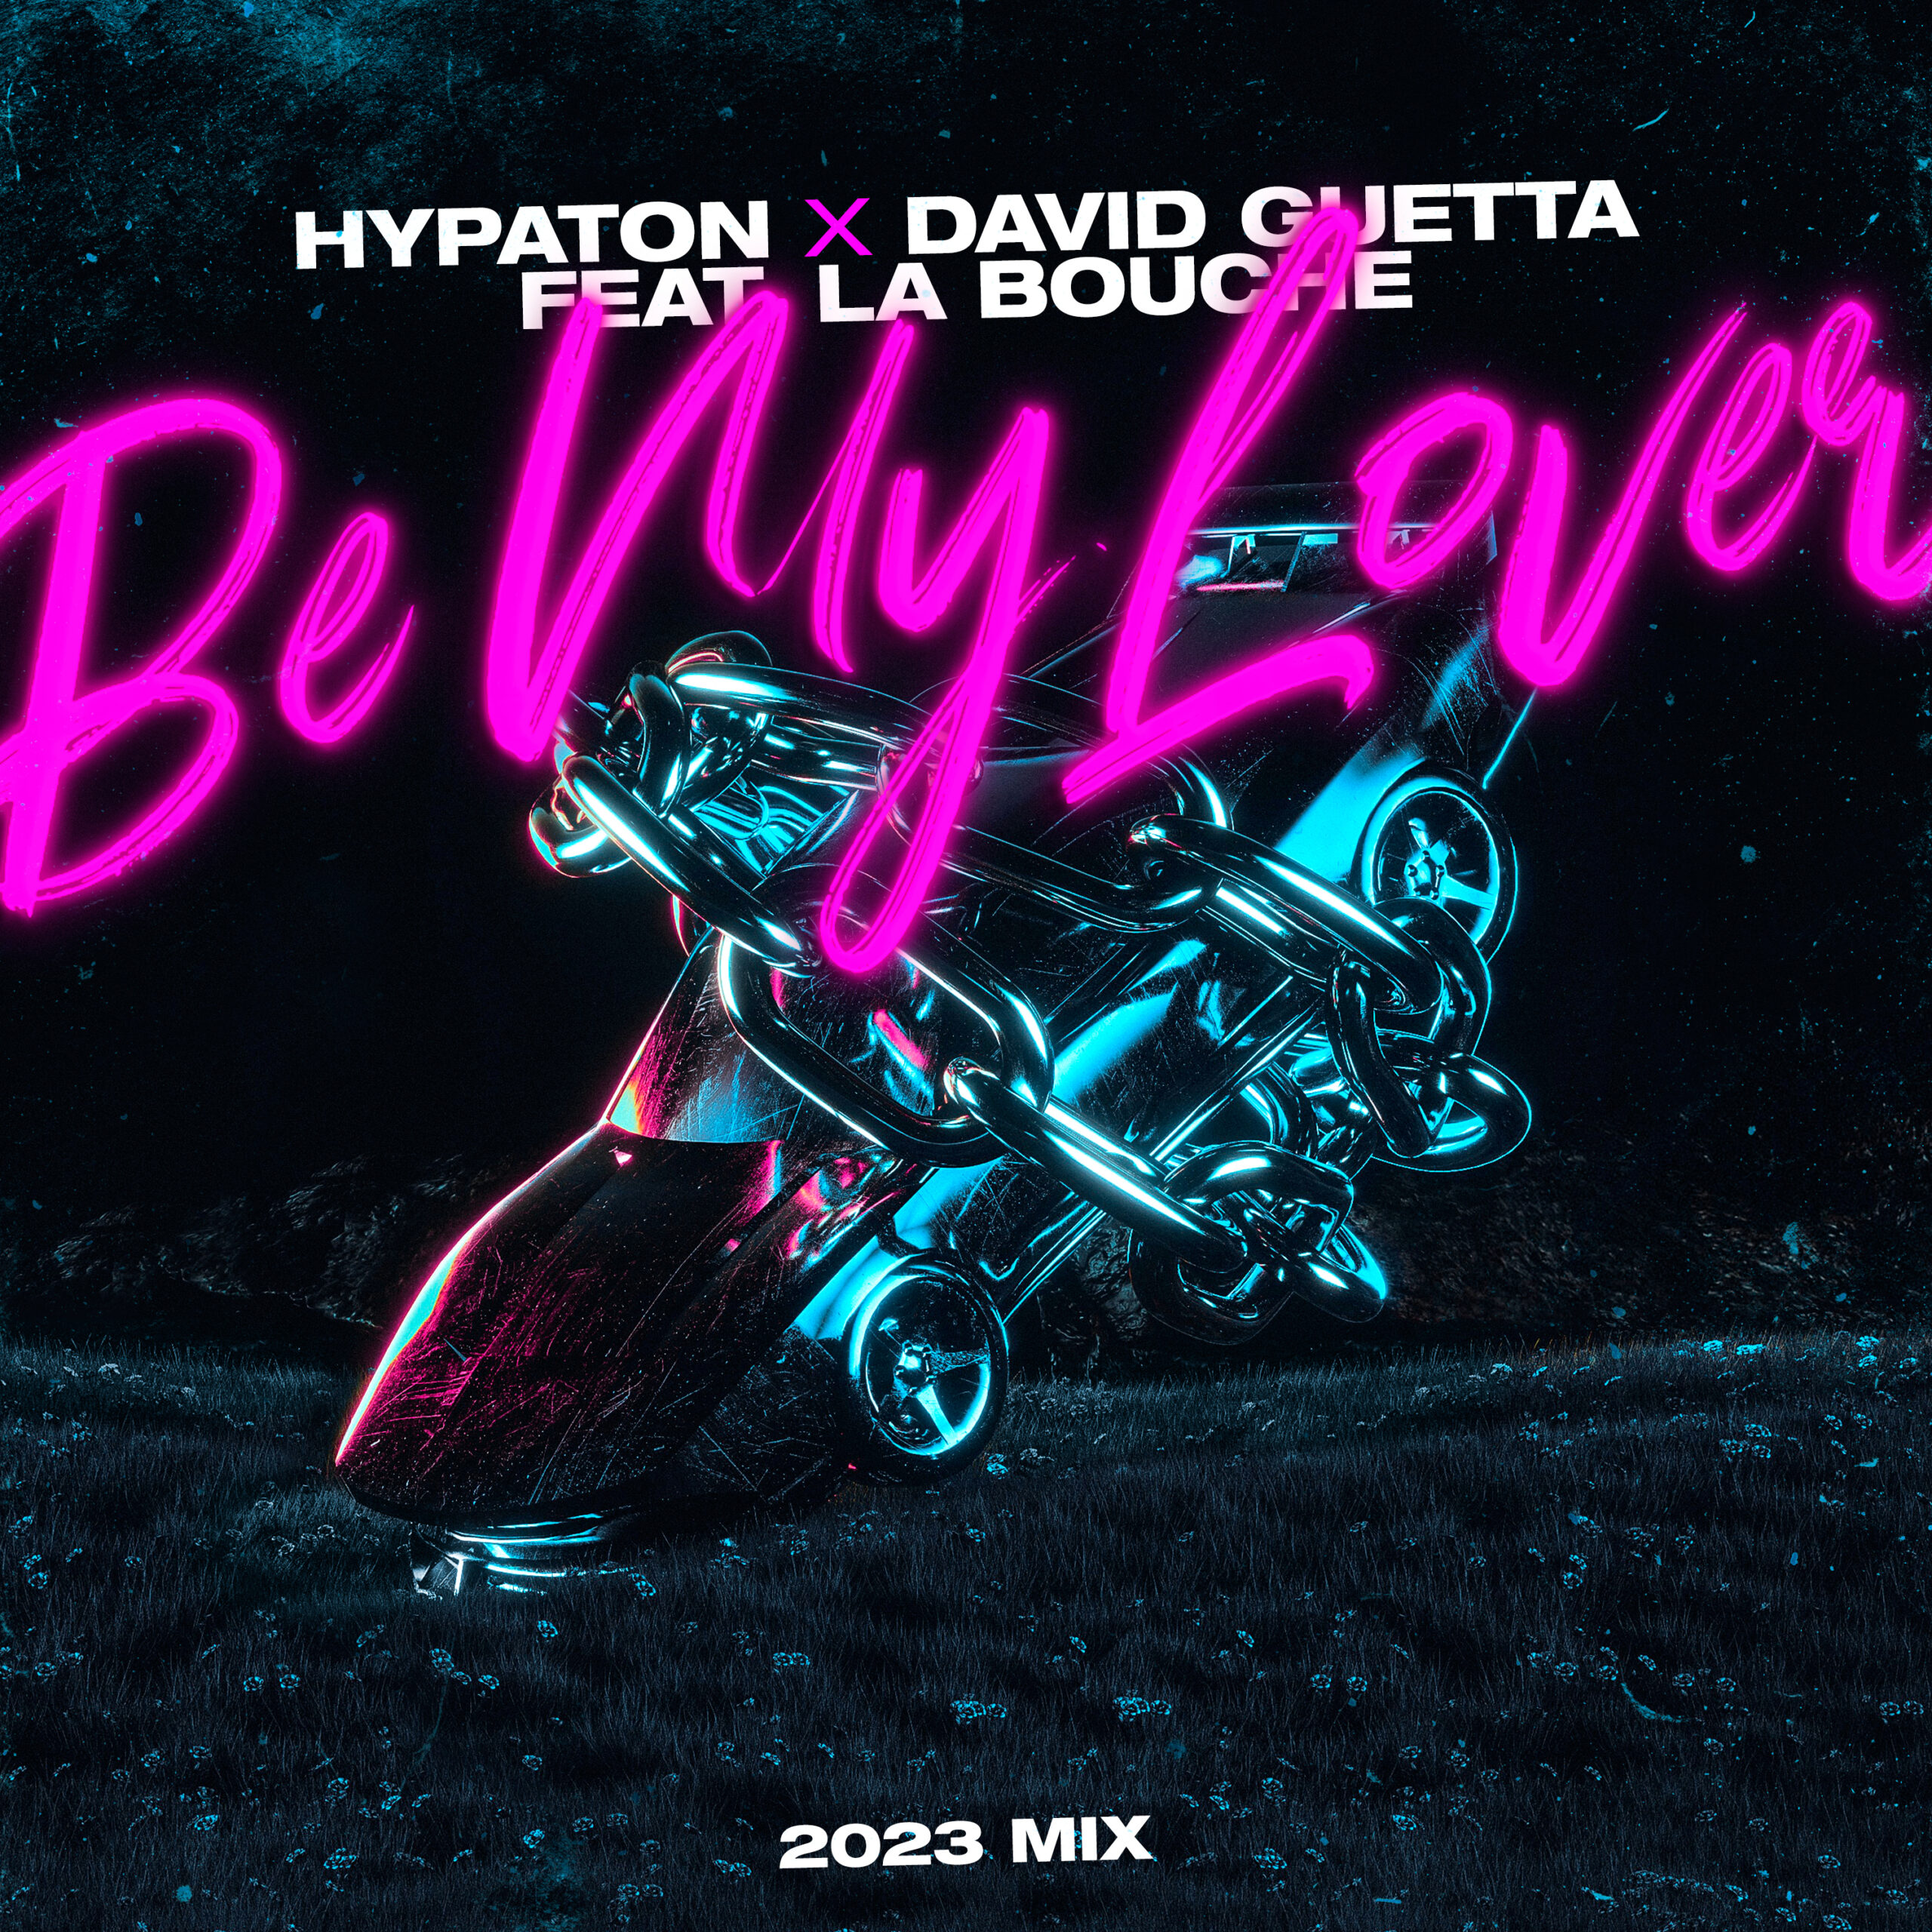 David Guetta e Hypaton lançam o remix de "Be My Lover", da La Bouche

